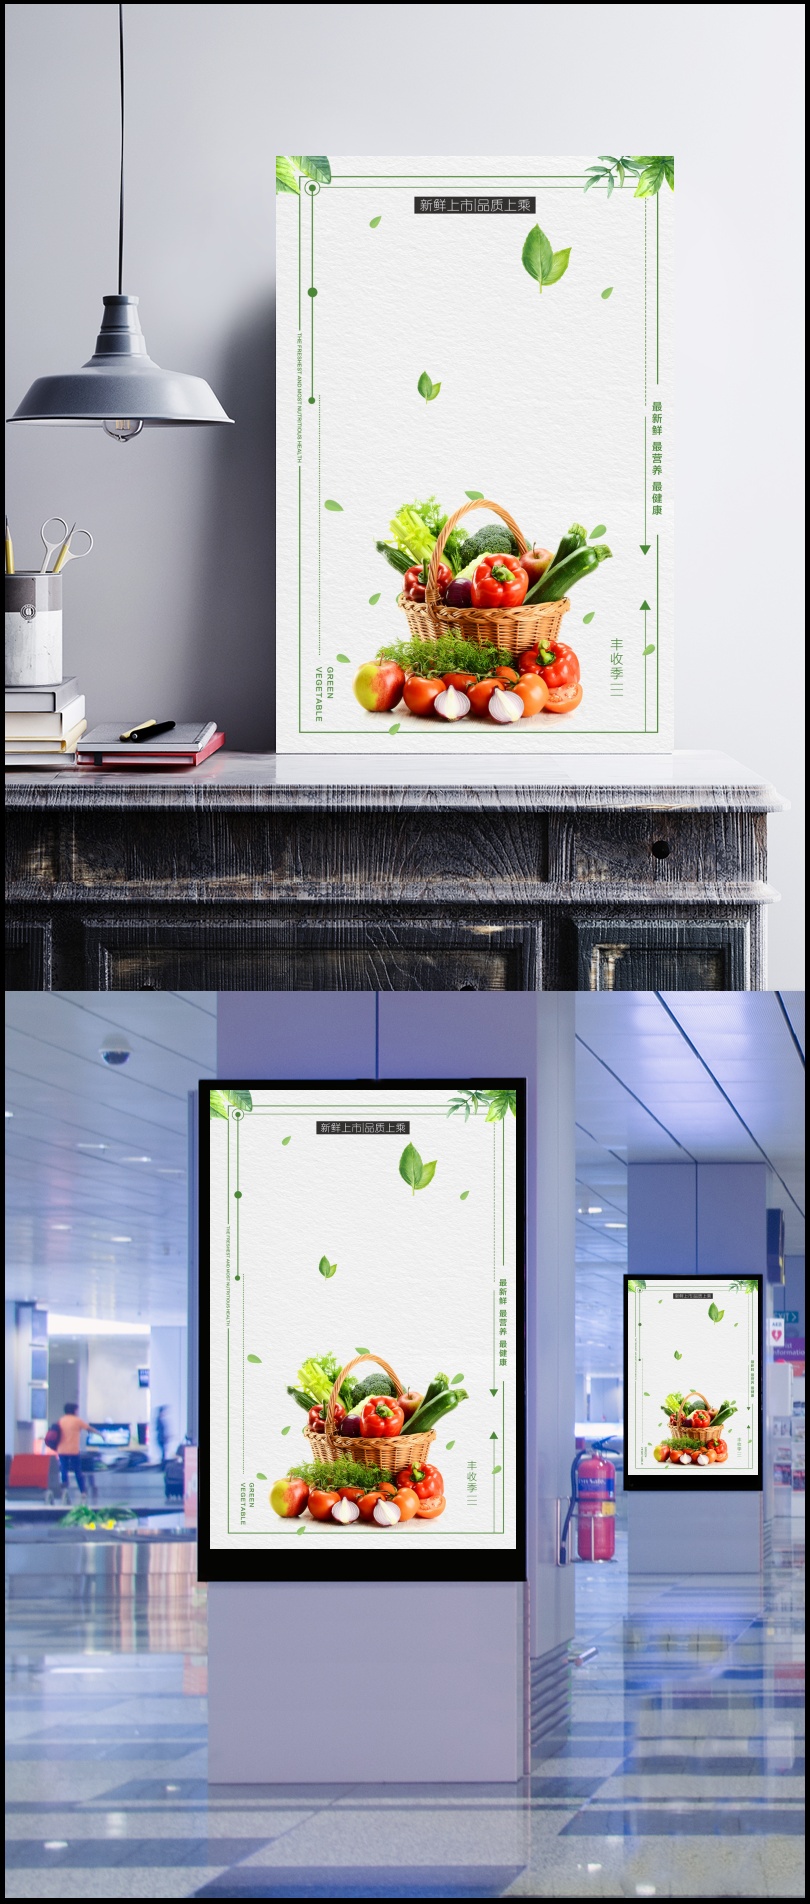 水果店海报背景素材设计模板素材